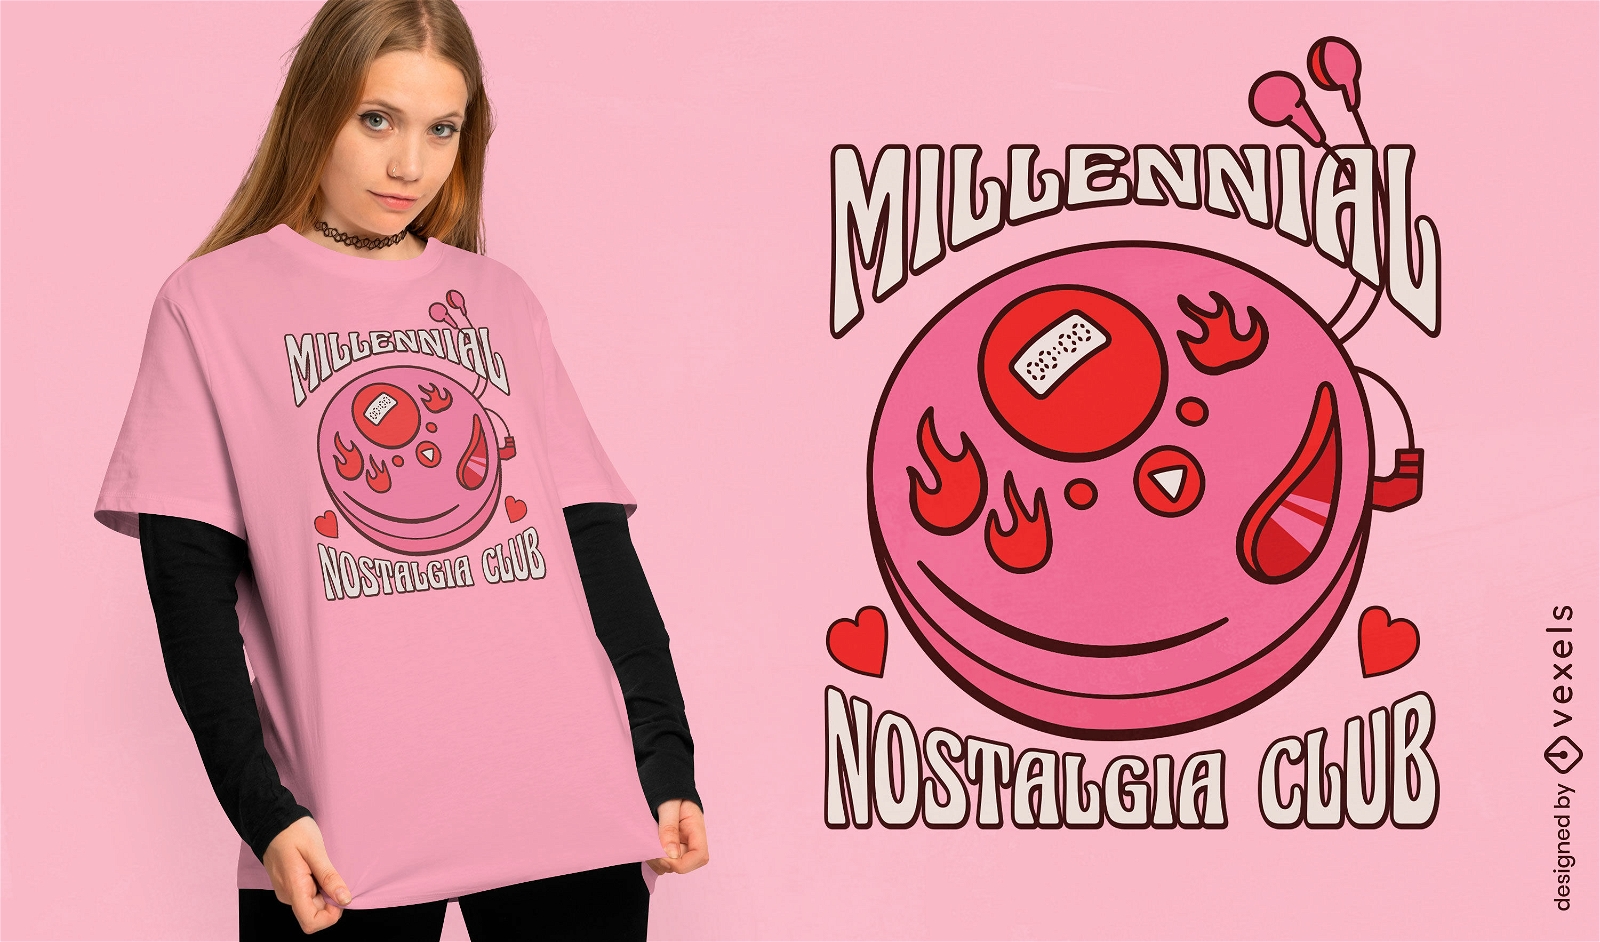 Millennial-Nostalgie-Club-T-Shirt-Design